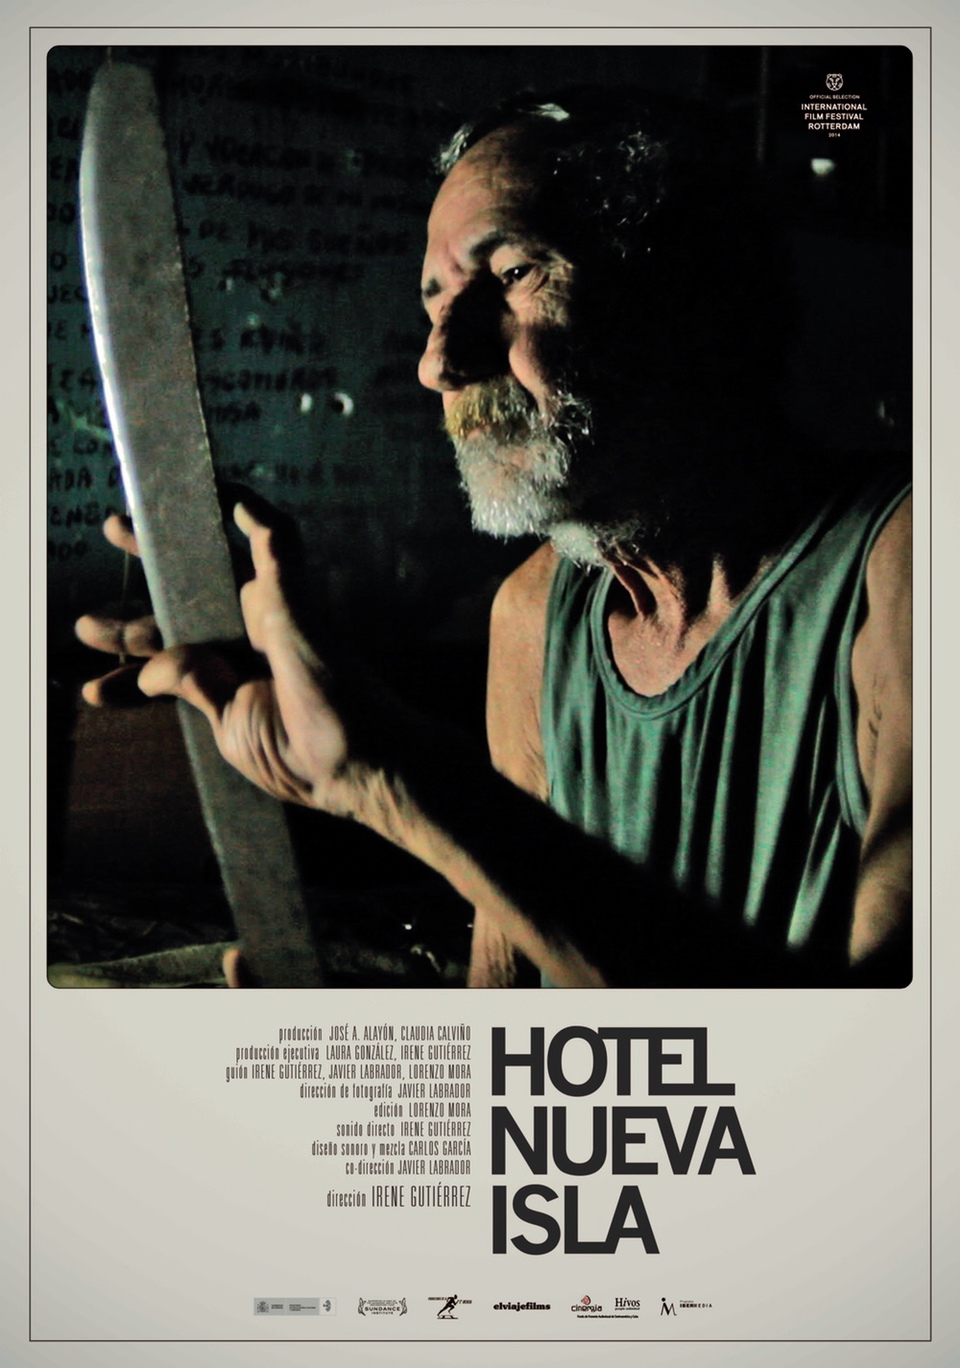 Poster of Hotel Nueva Isla - Cuba